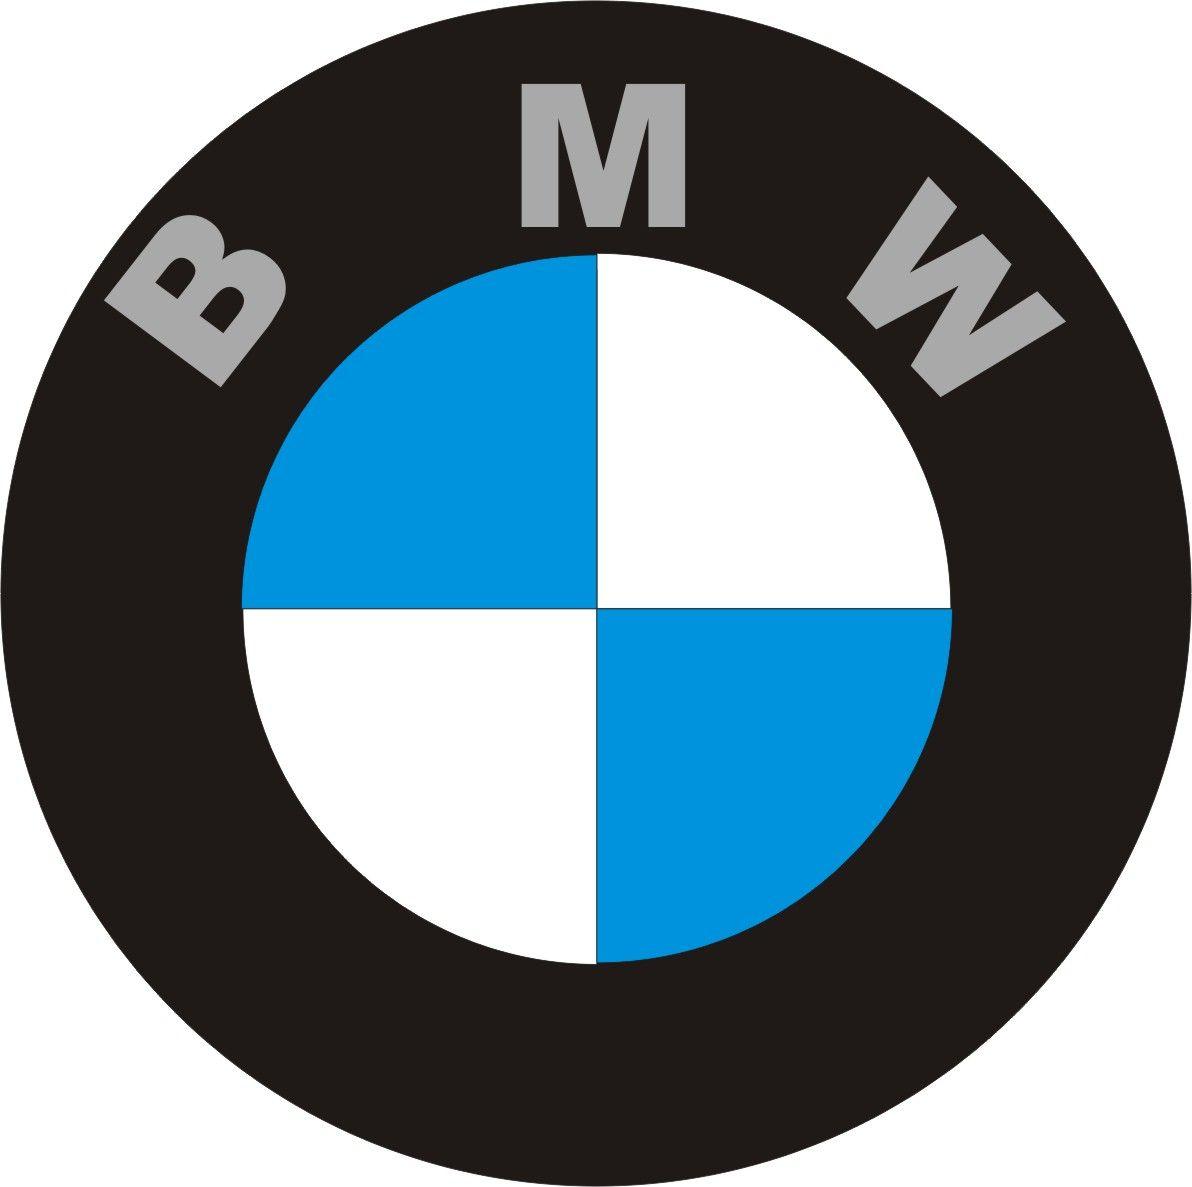 Symbol Logo - BMW Logo, BMW Car Symbol Meaning, Emblem of Car Brand | Car Brand ...